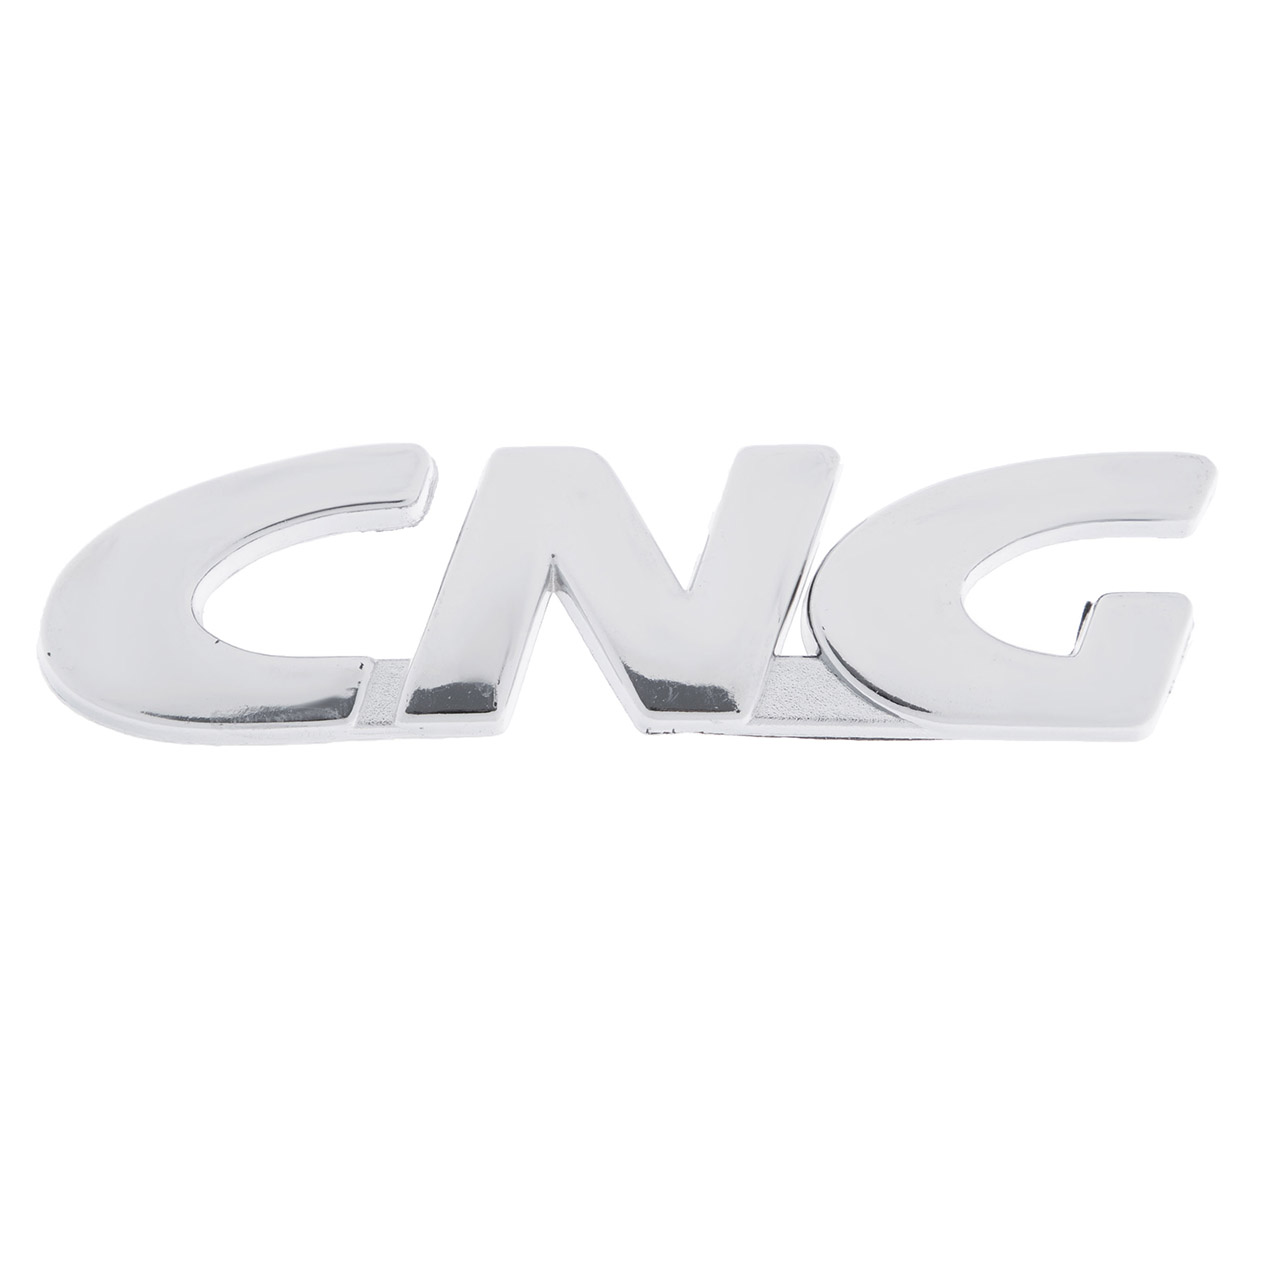 آرم خودرو طرح CNG کد 103680                     غیر اصل